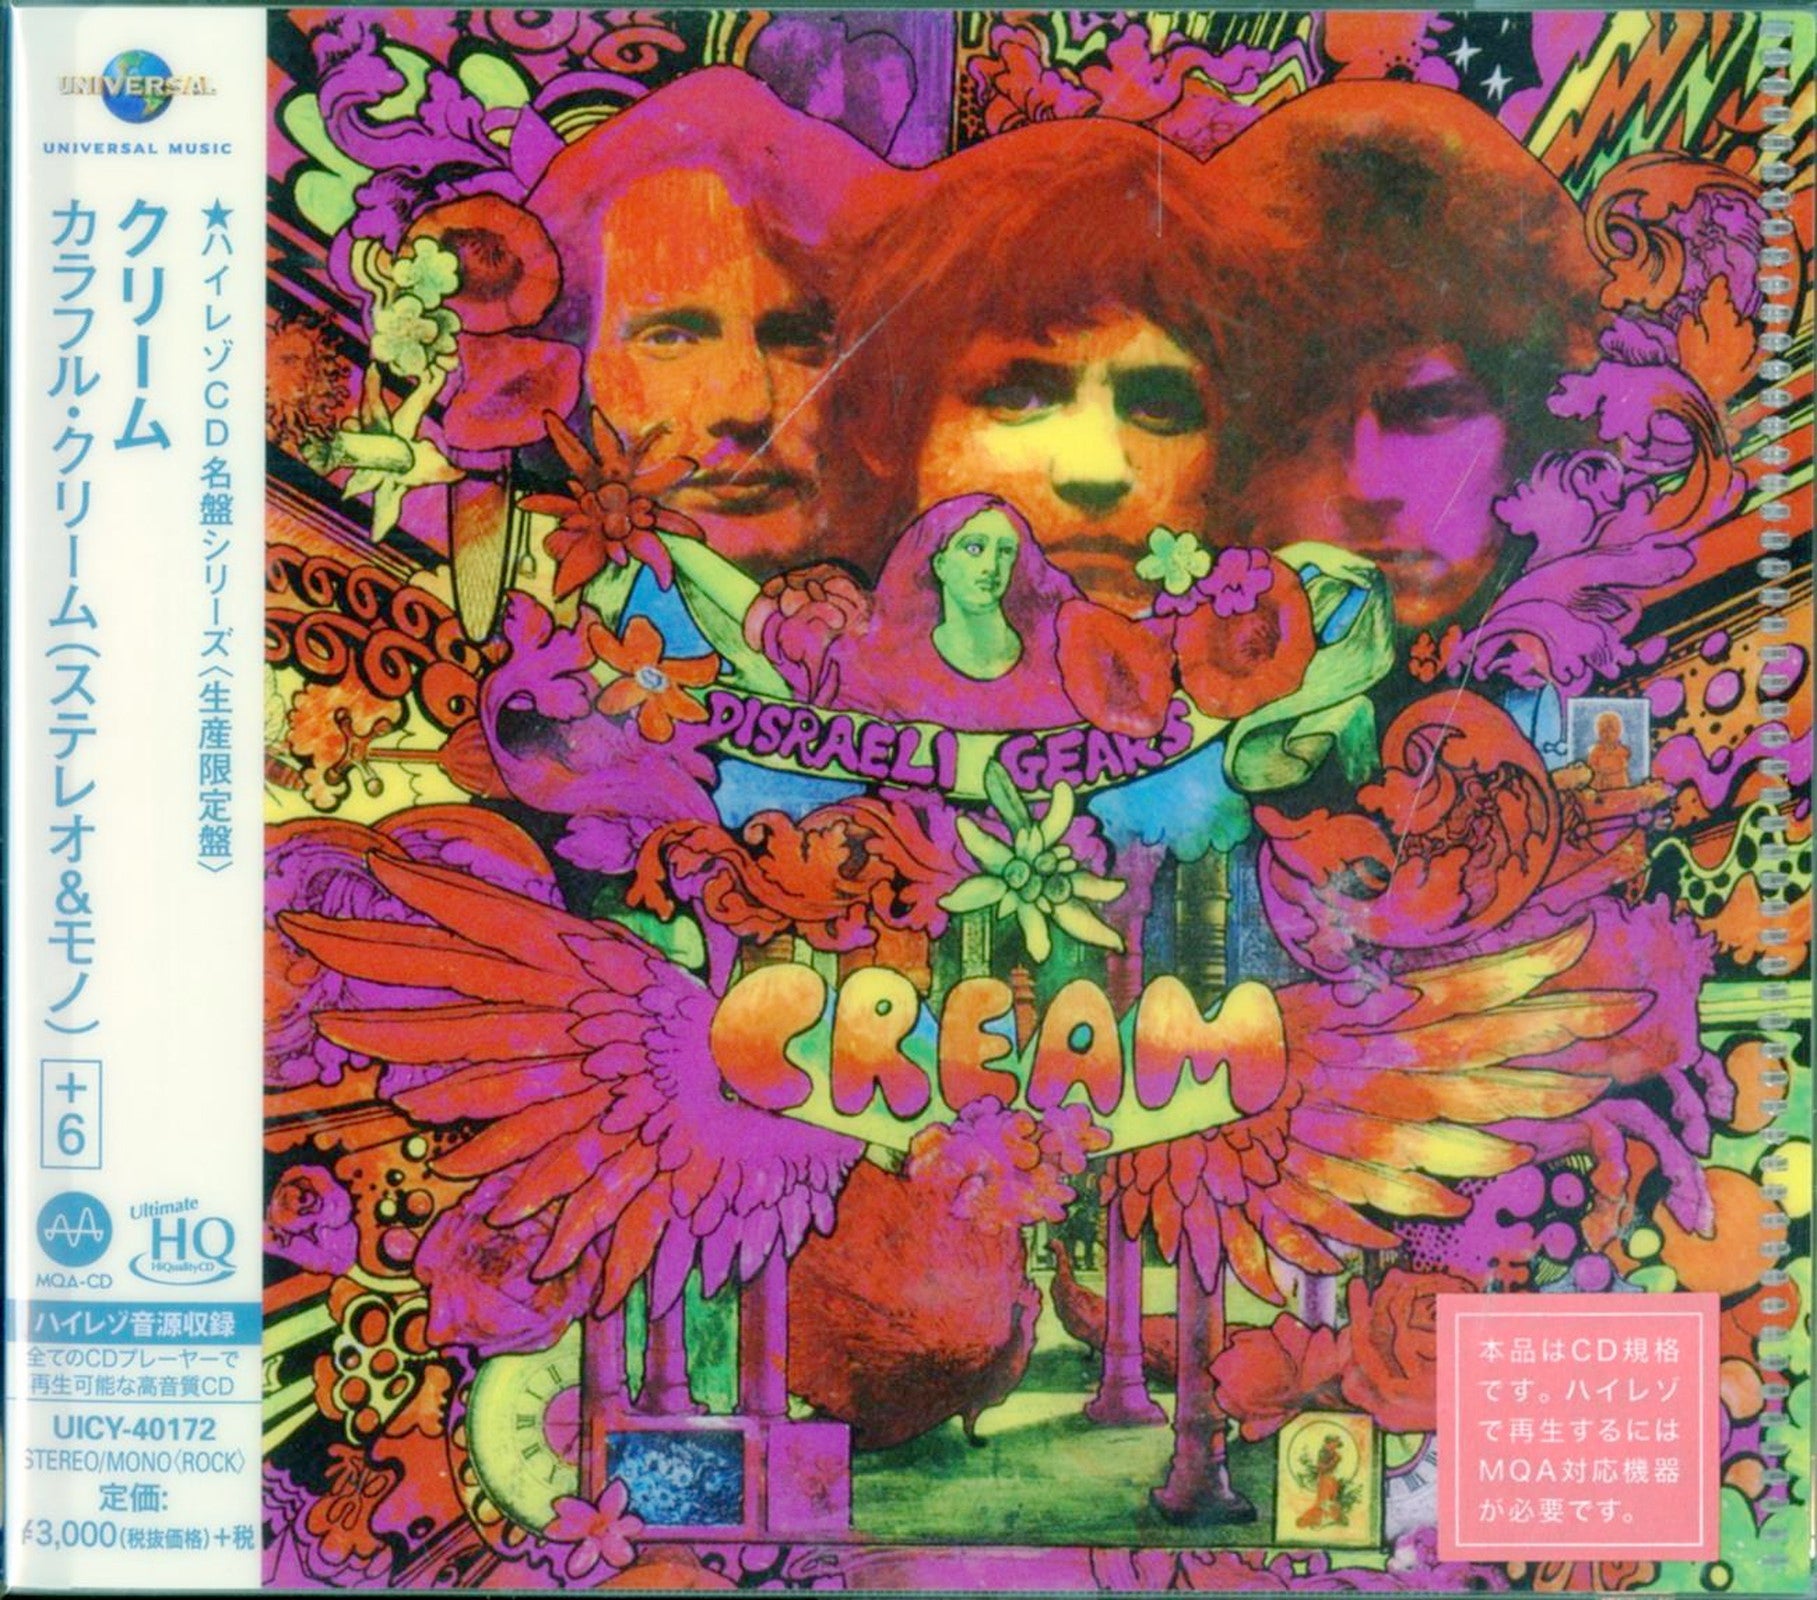 Cream - Disraeli Gears - Japan UHQCD Bonus Track Limited Edition